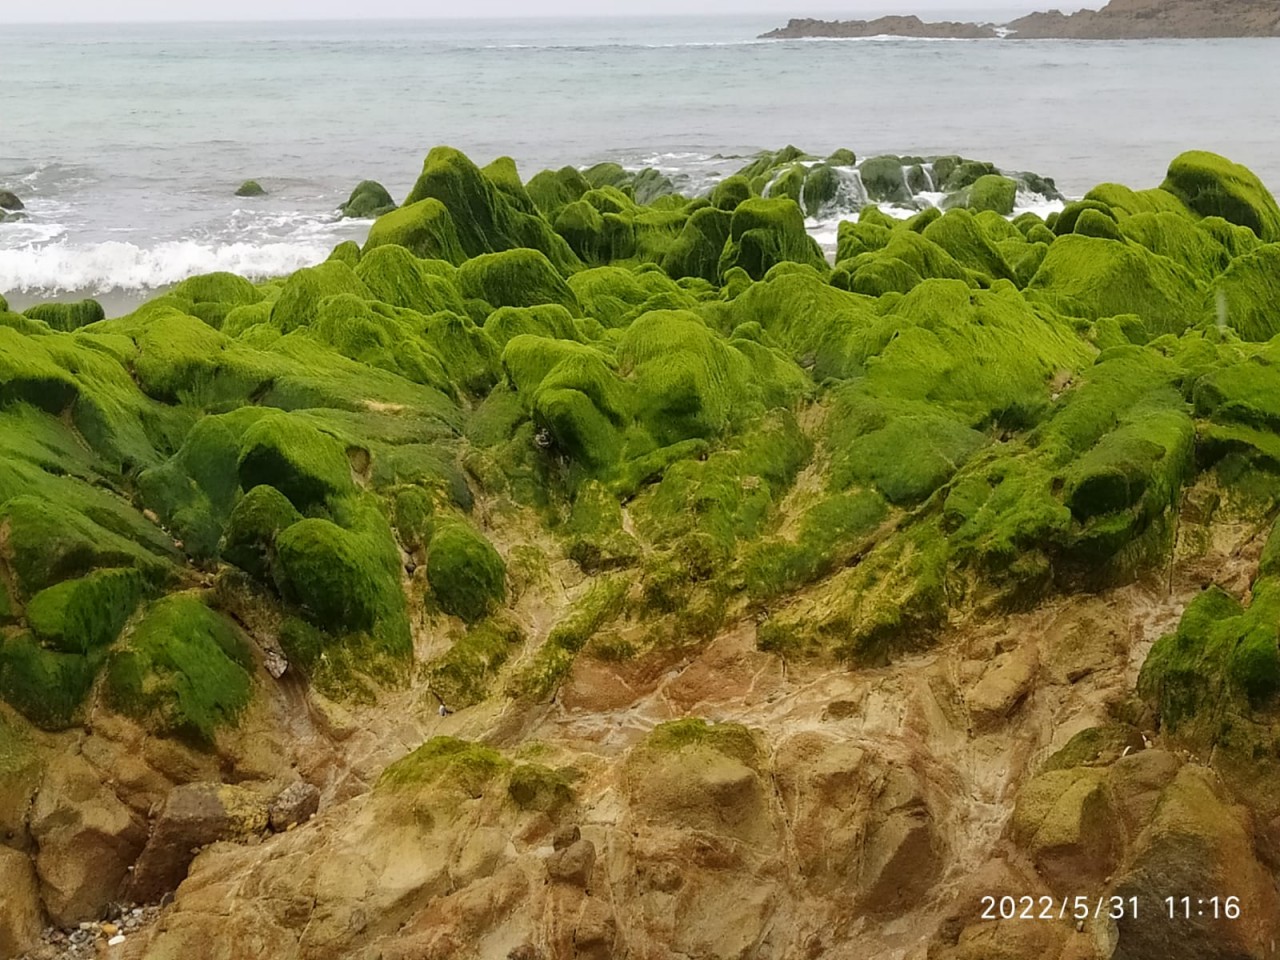 04 - Restos de un bosque fósil en la playa de Doniños - 31-05-2022